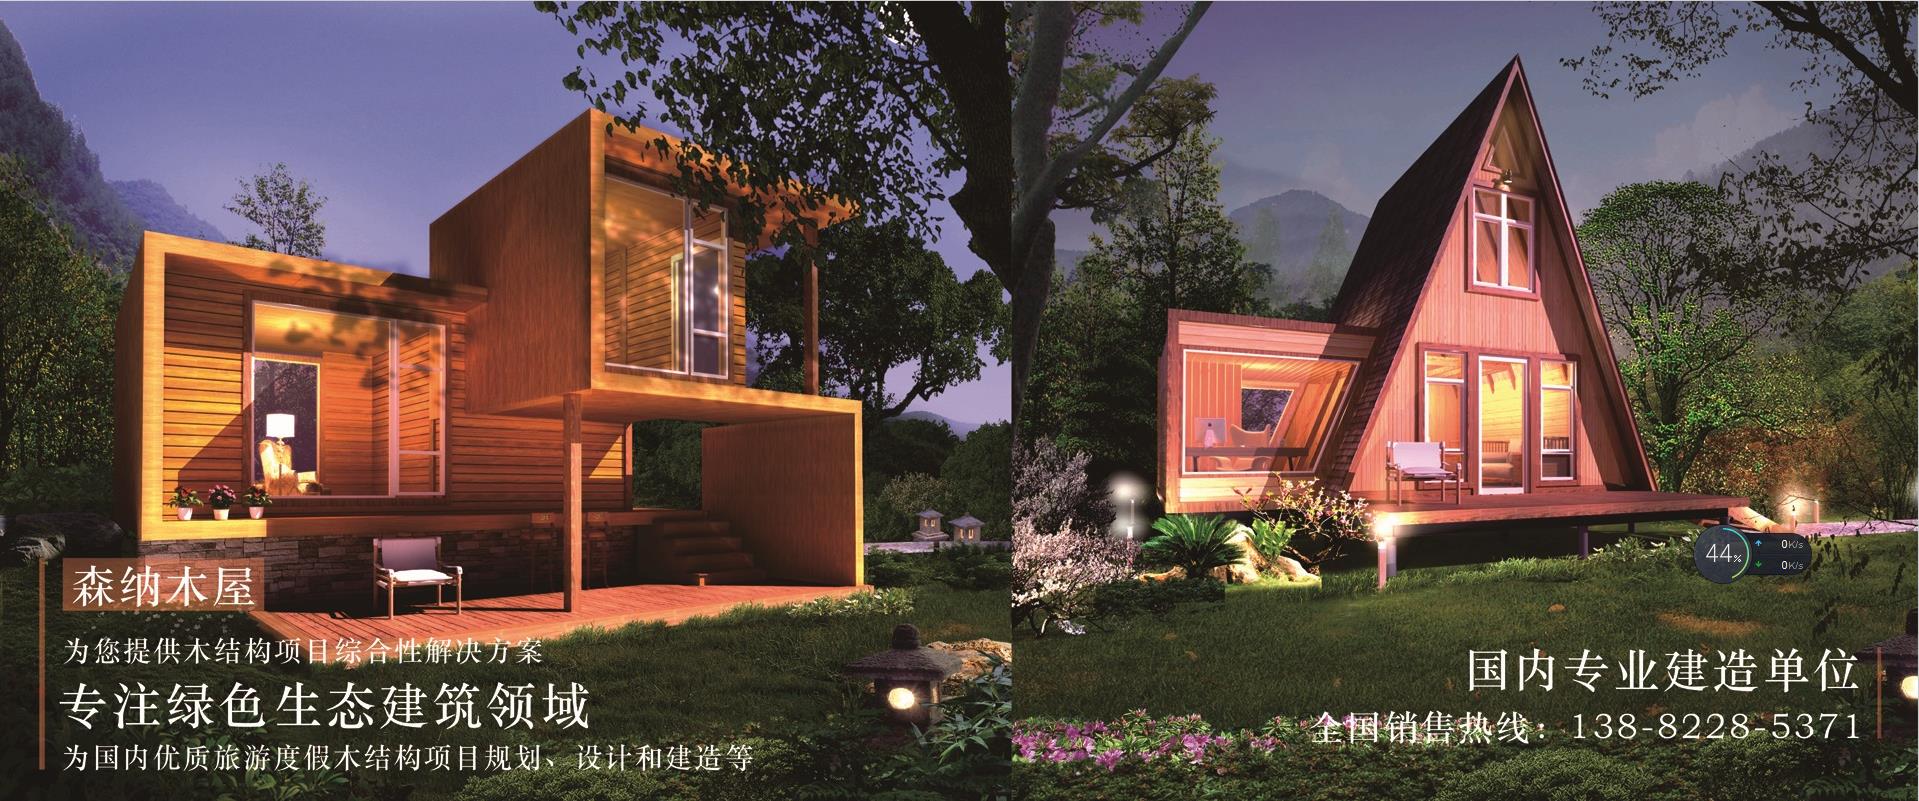 生态木结构房屋